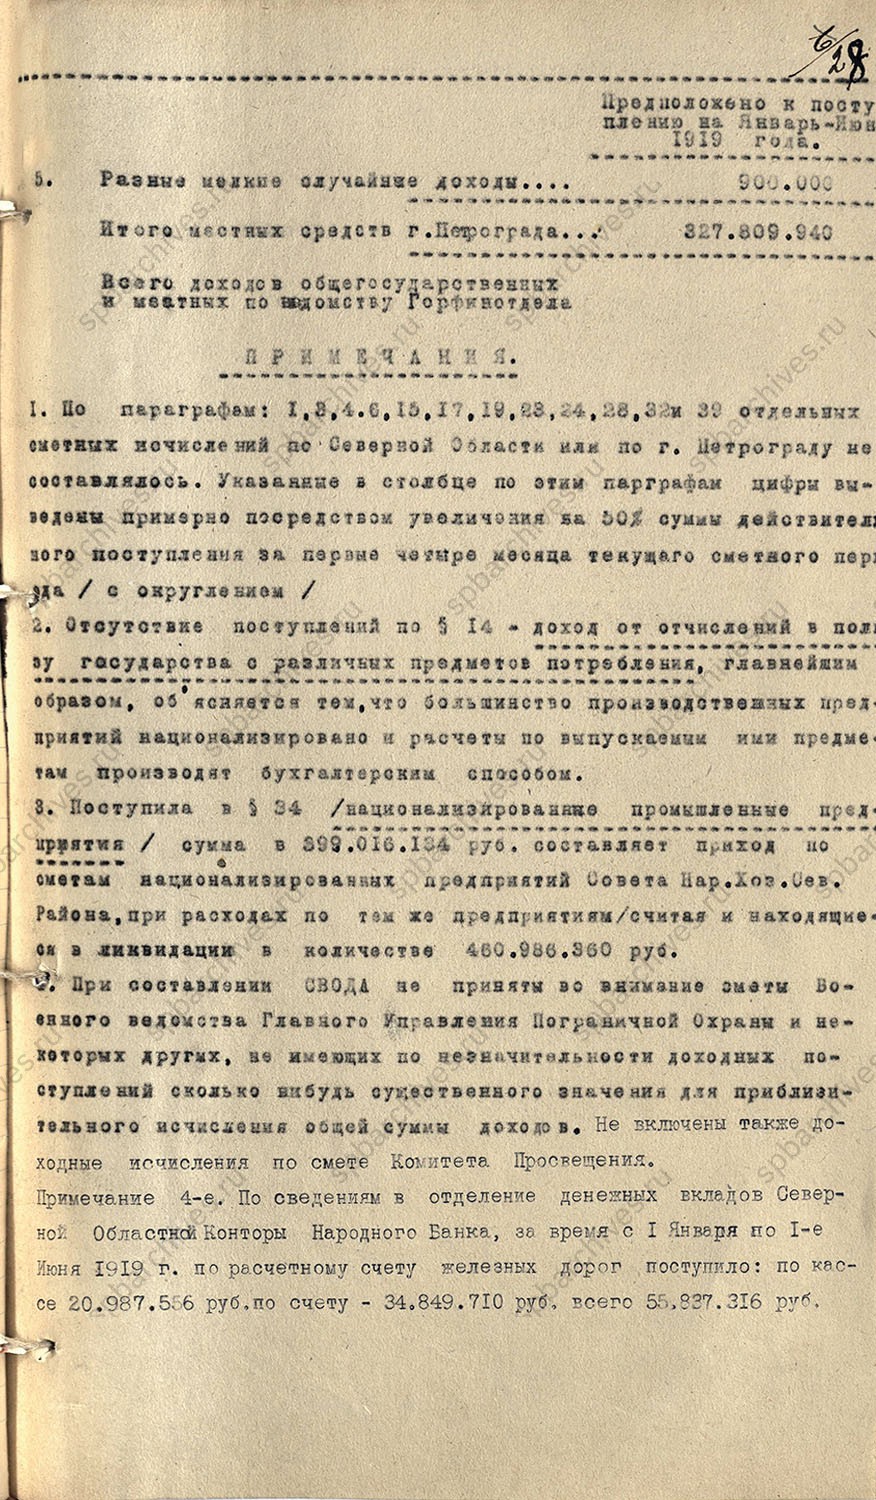 Дело по составлению бюджета г. Петрограда на I полугодие 1919 г. Не ранее 16 мая 1919 г.<br />
<em>ЦГА СПб. Ф.1963. Оп.61. Д.5. Обложка. Л.17-18, 25-28.</em>